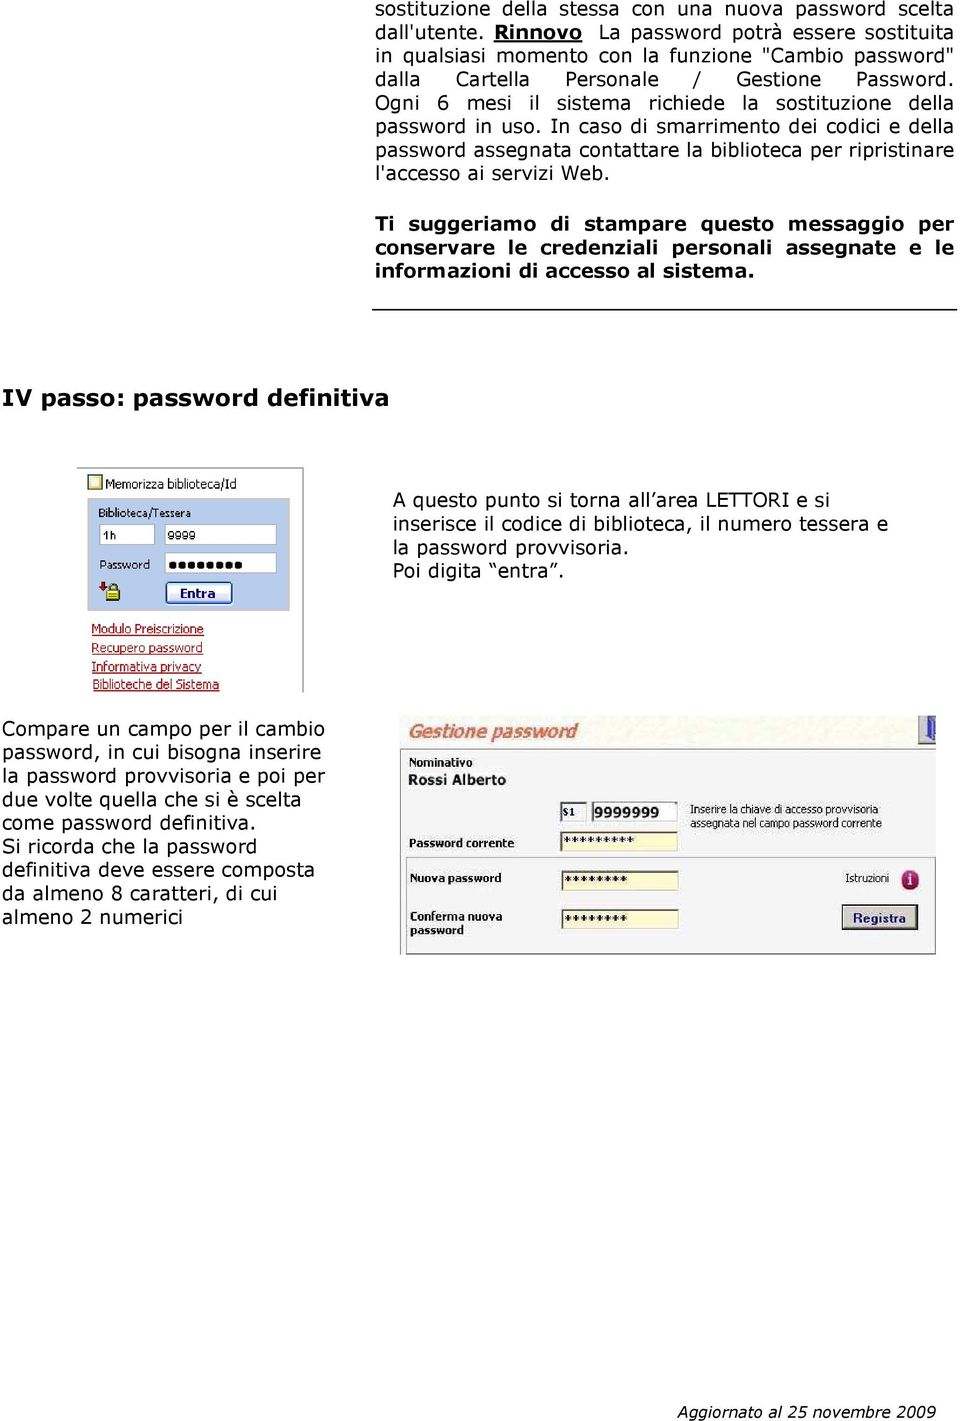 Ogni 6 mesi il sistema richiede la sostituzione della password in uso. In caso di smarrimento dei codici e della password assegnata contattare la biblioteca per ripristinare l'accesso ai servizi Web.